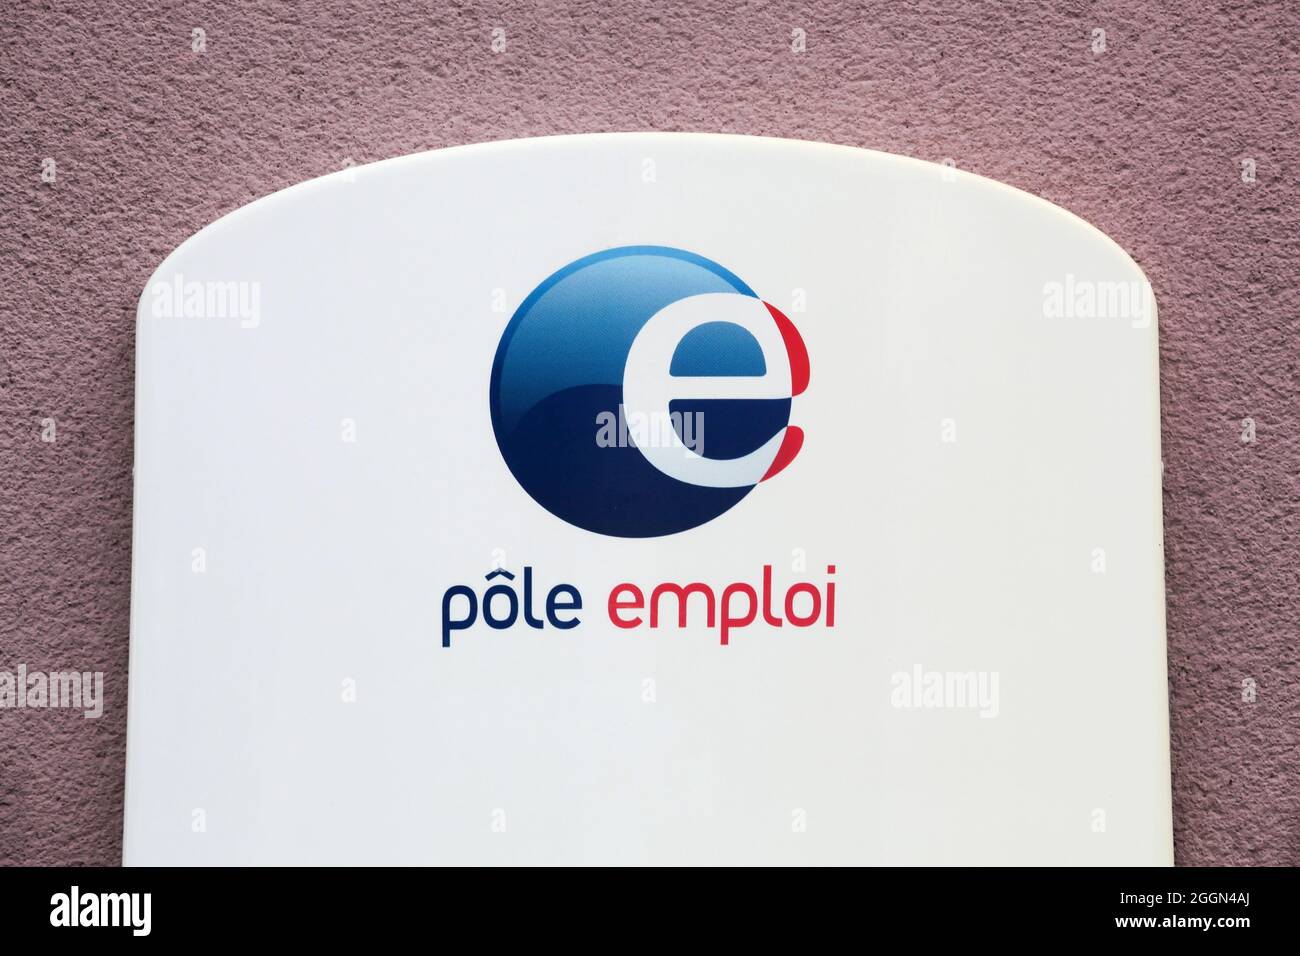 Tarare, Frankreich - 27. Juni 2020: Pole emploi ist eine französische Regierungsbehörde, die Arbeitslose registriert und ihnen mit finanzieller Hilfe hilft Stockfoto